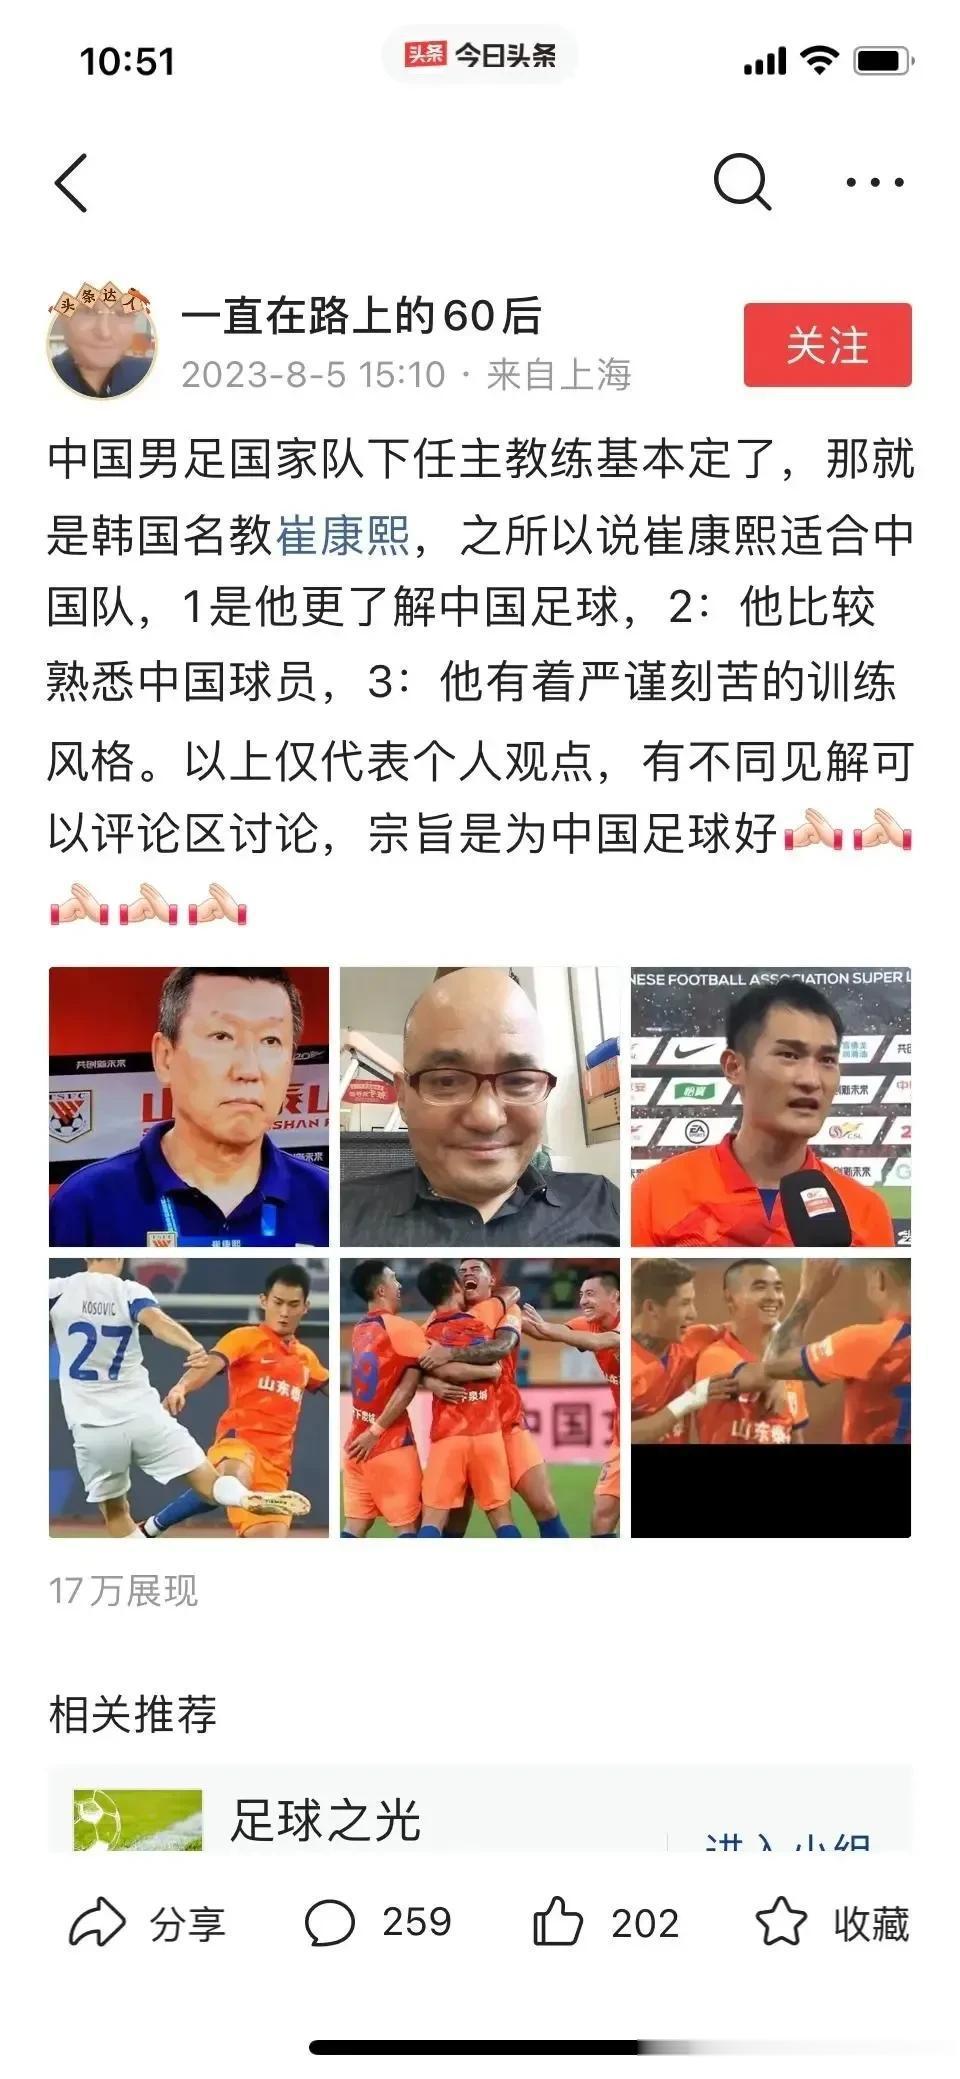 上海海港球迷真踏马孬！

看泰山队在崔康熙的带领下越来越好，就出如此下三滥的招式